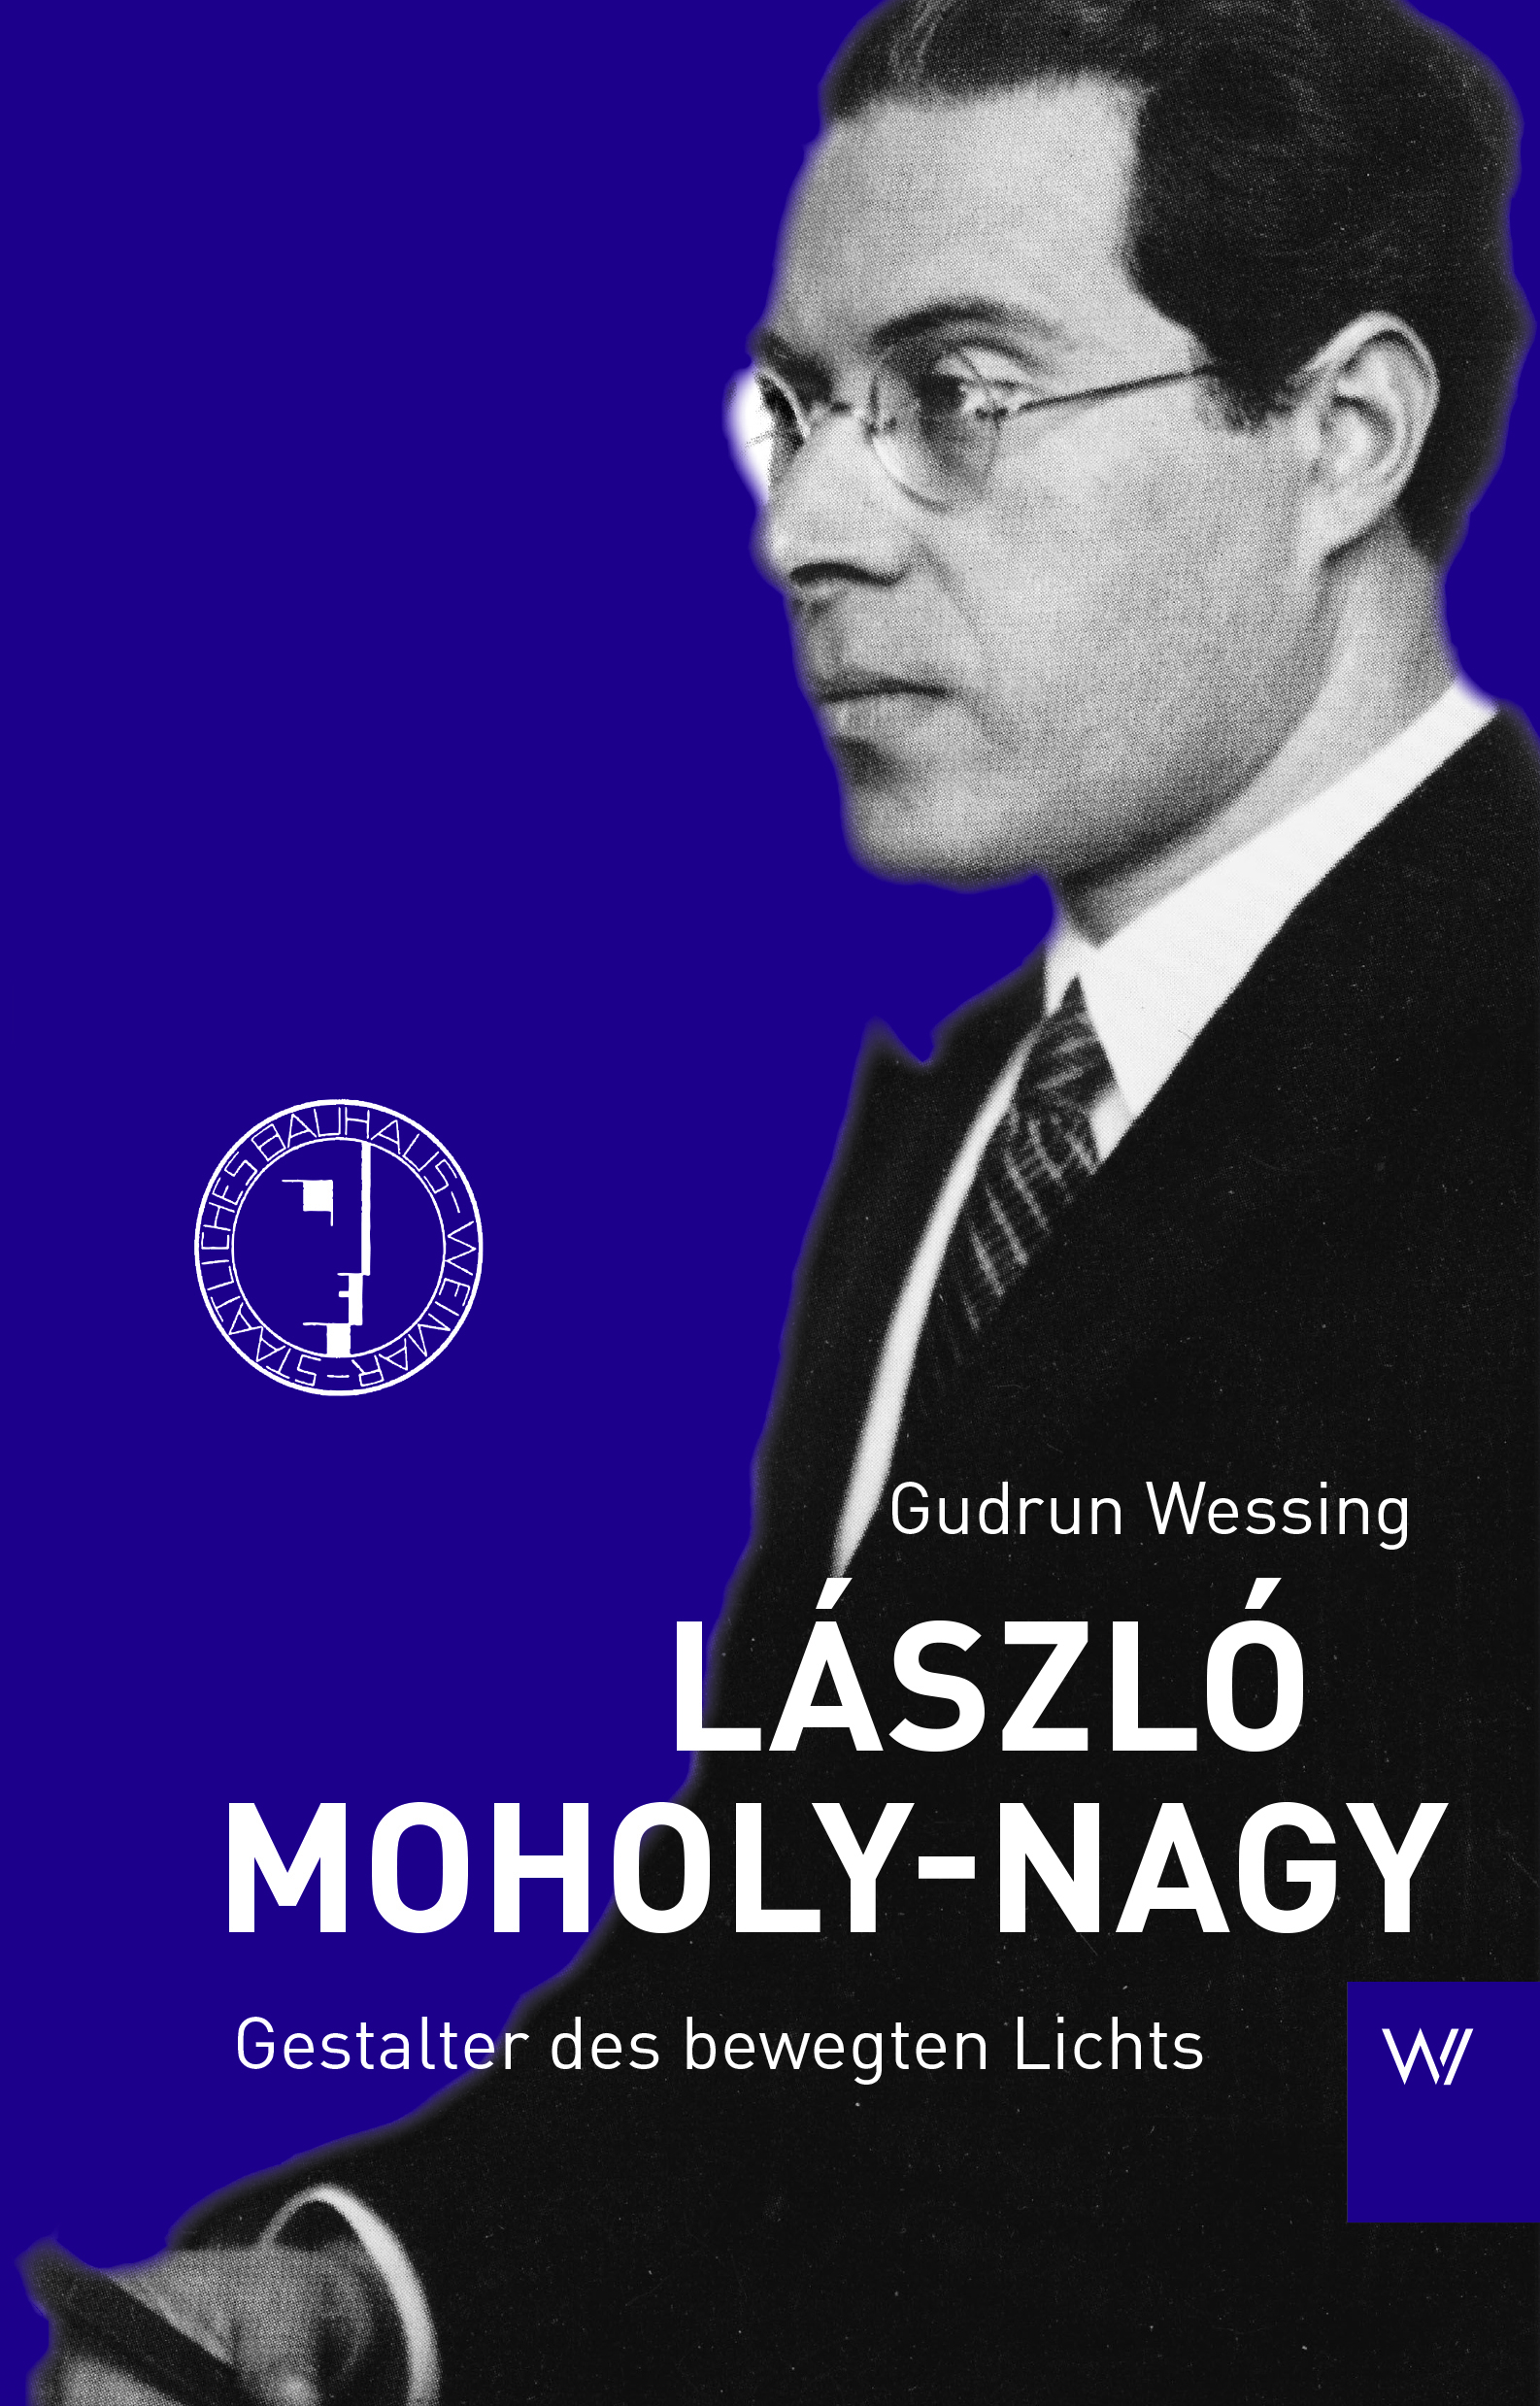 László Moholy-Nagy